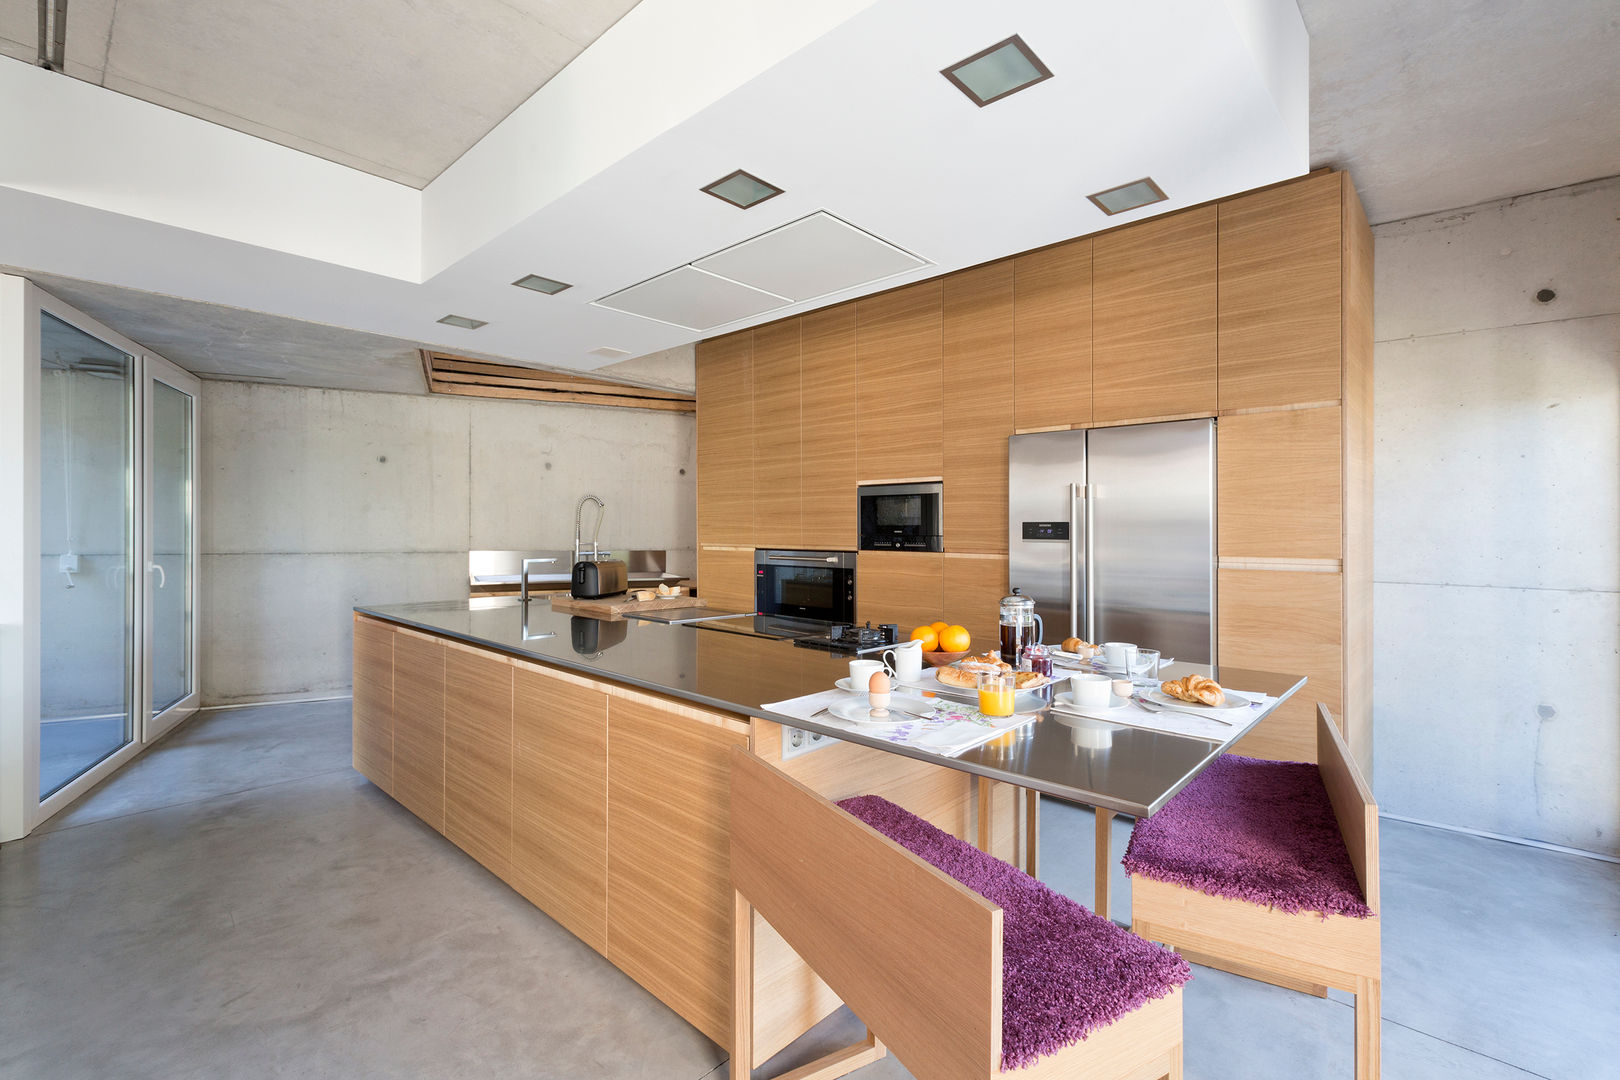 dezanove house designed by iñaki leite - kitchen Inaki Leite Design Ltd. مطبخ ألواح المطبخ